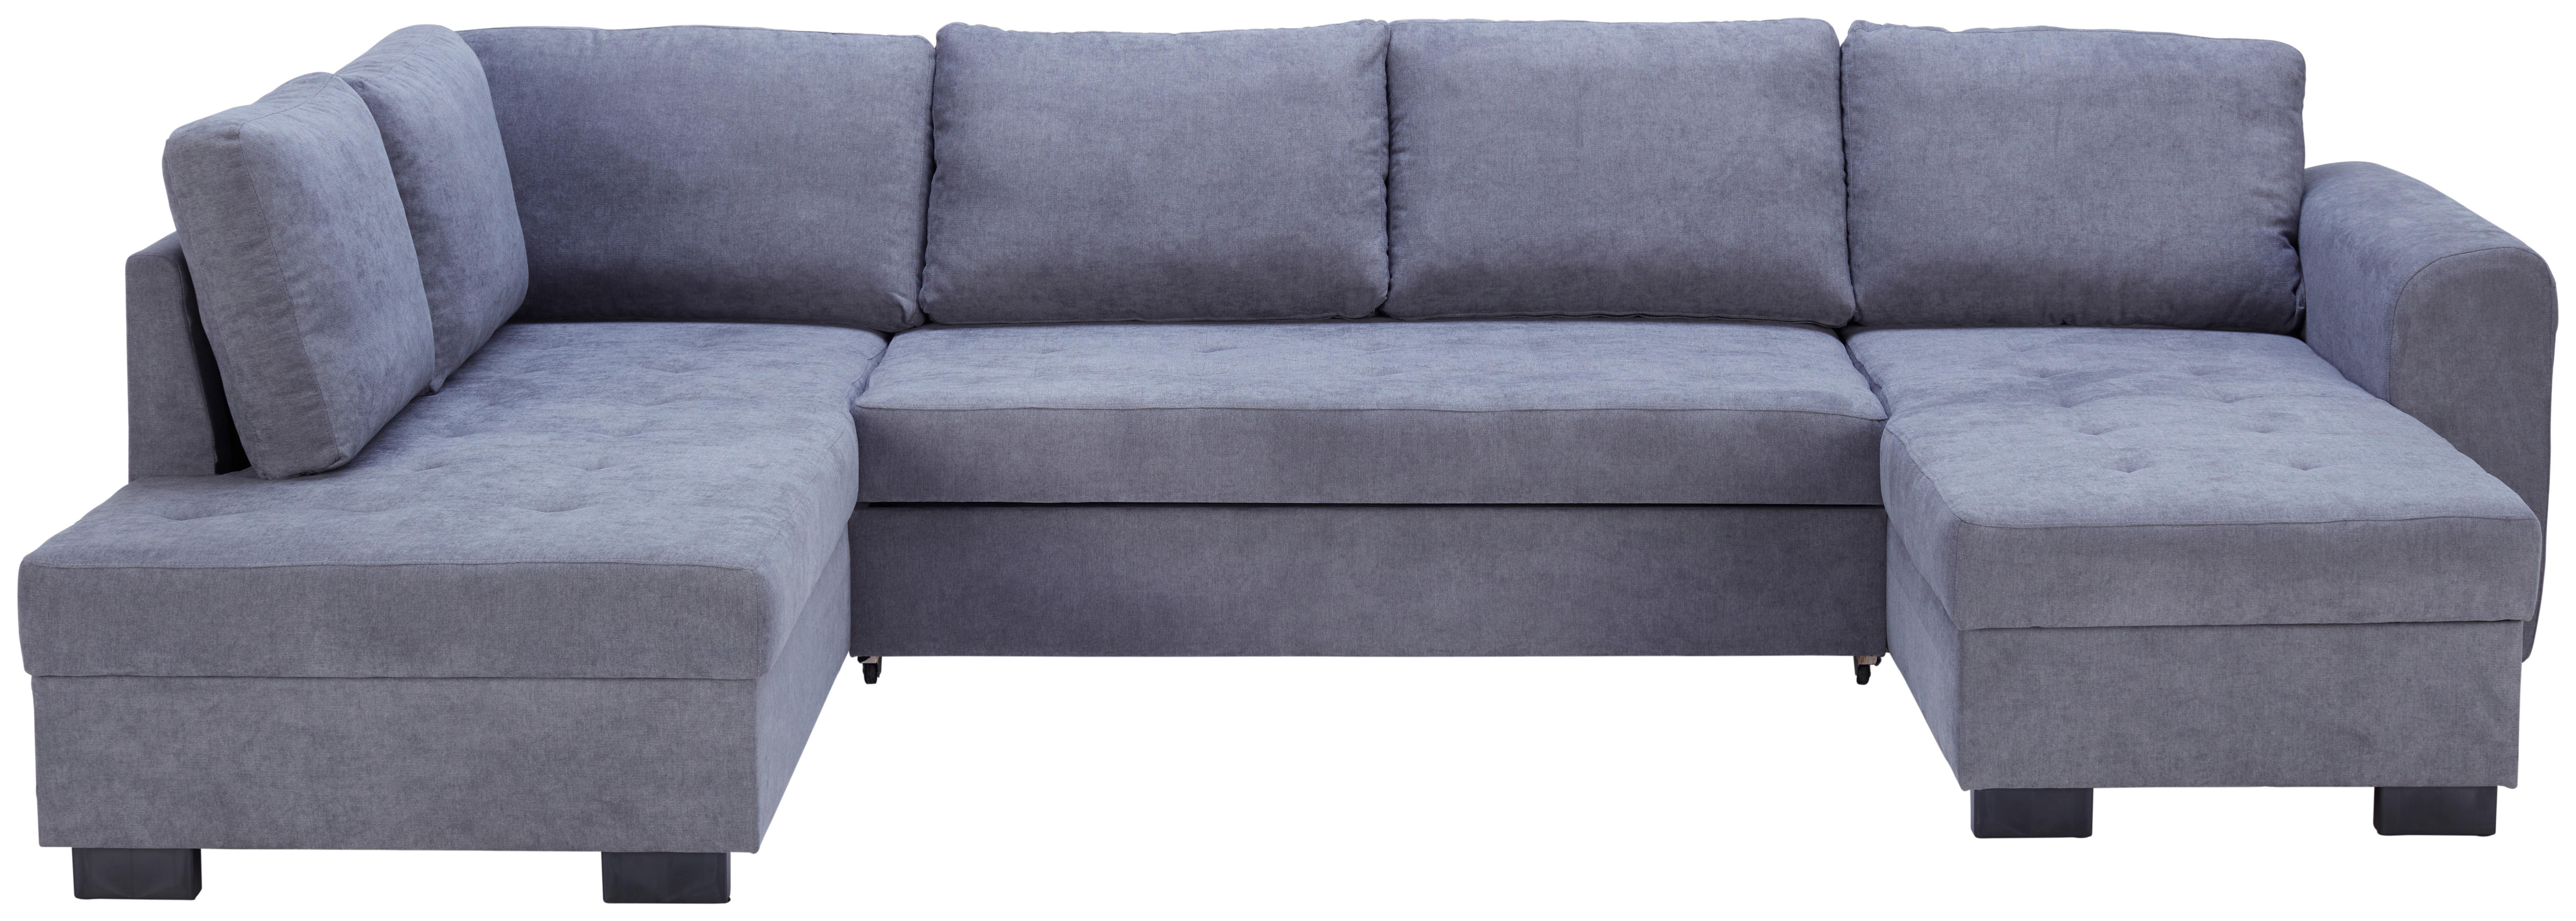 Sedežna Garnitura Malte, Siva, Ležišče, Predal, U Oblika - siva, Moderno, tekstil (178/305/155cm) - Modern Living